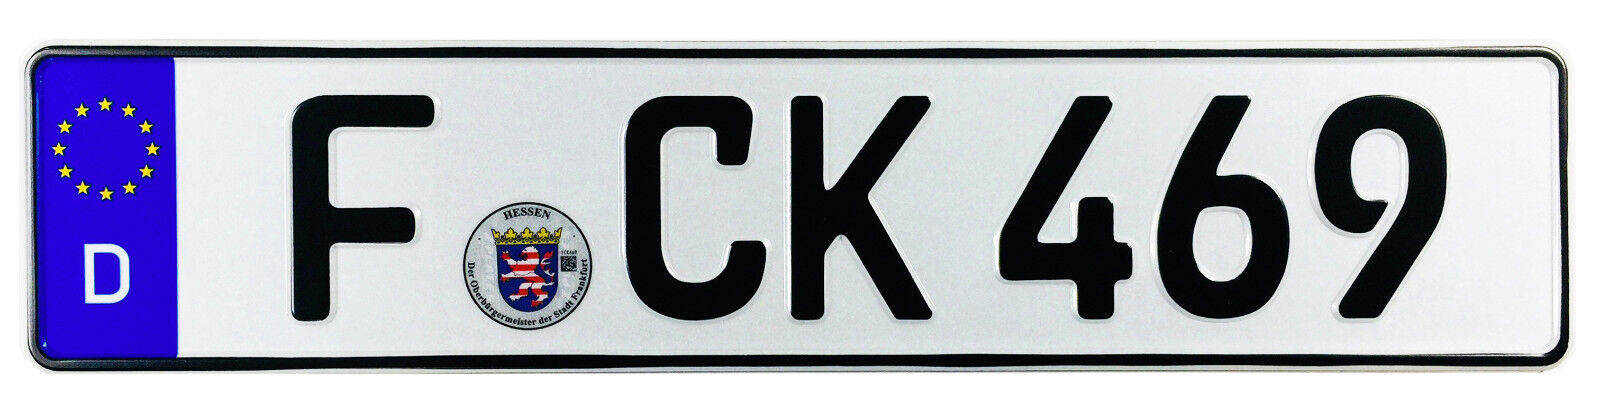 German License Plate - Frankfurt Germany